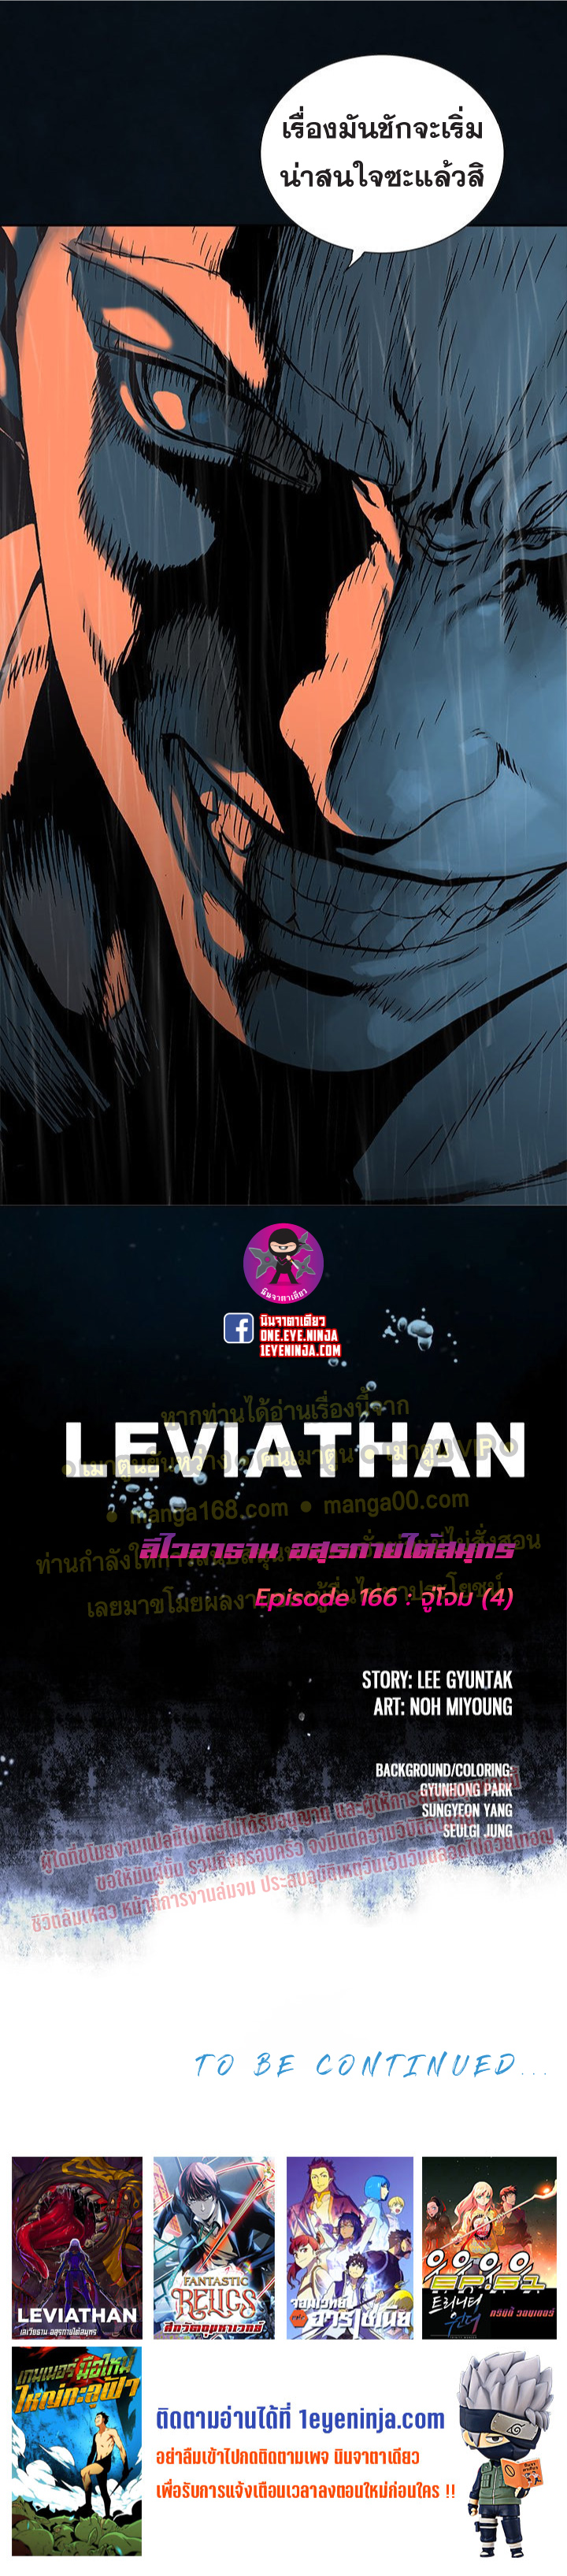 Leviathan166 28